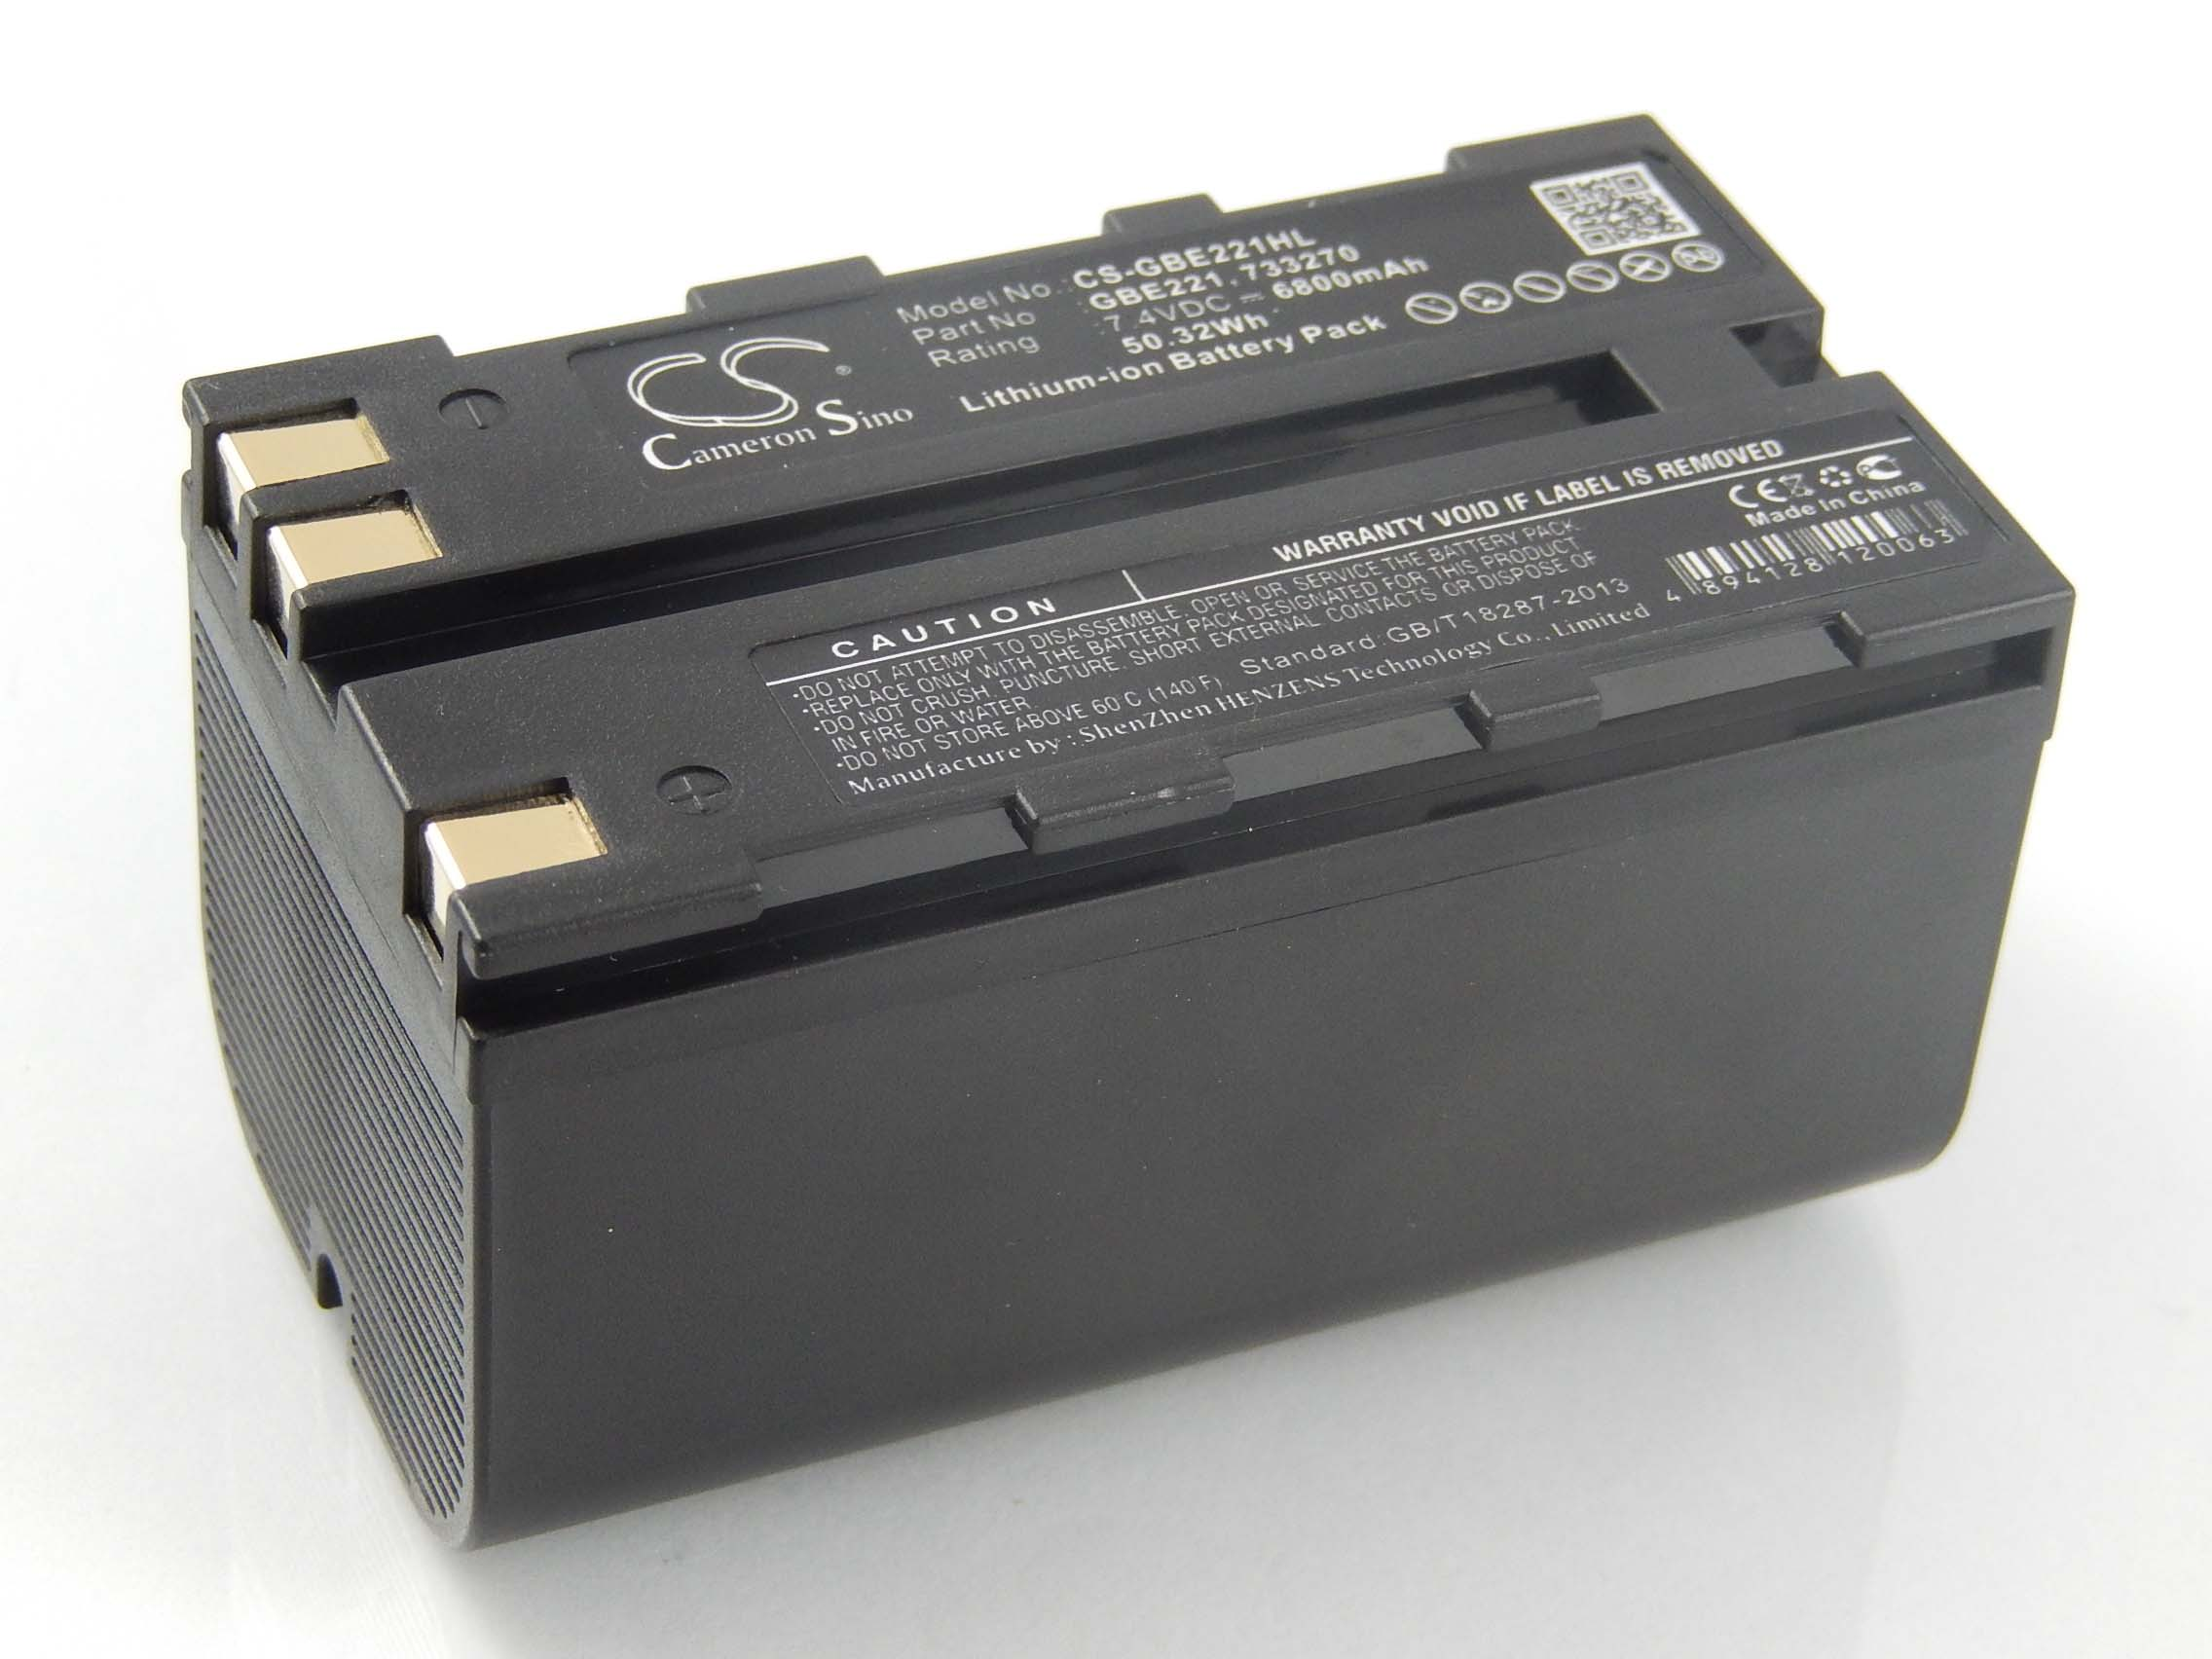 VHBW kompatibel mit 7.4 - Li-Ion TS02 TS06, Messgerät, Leica Volt, Akku TS09, 6800 Flexline